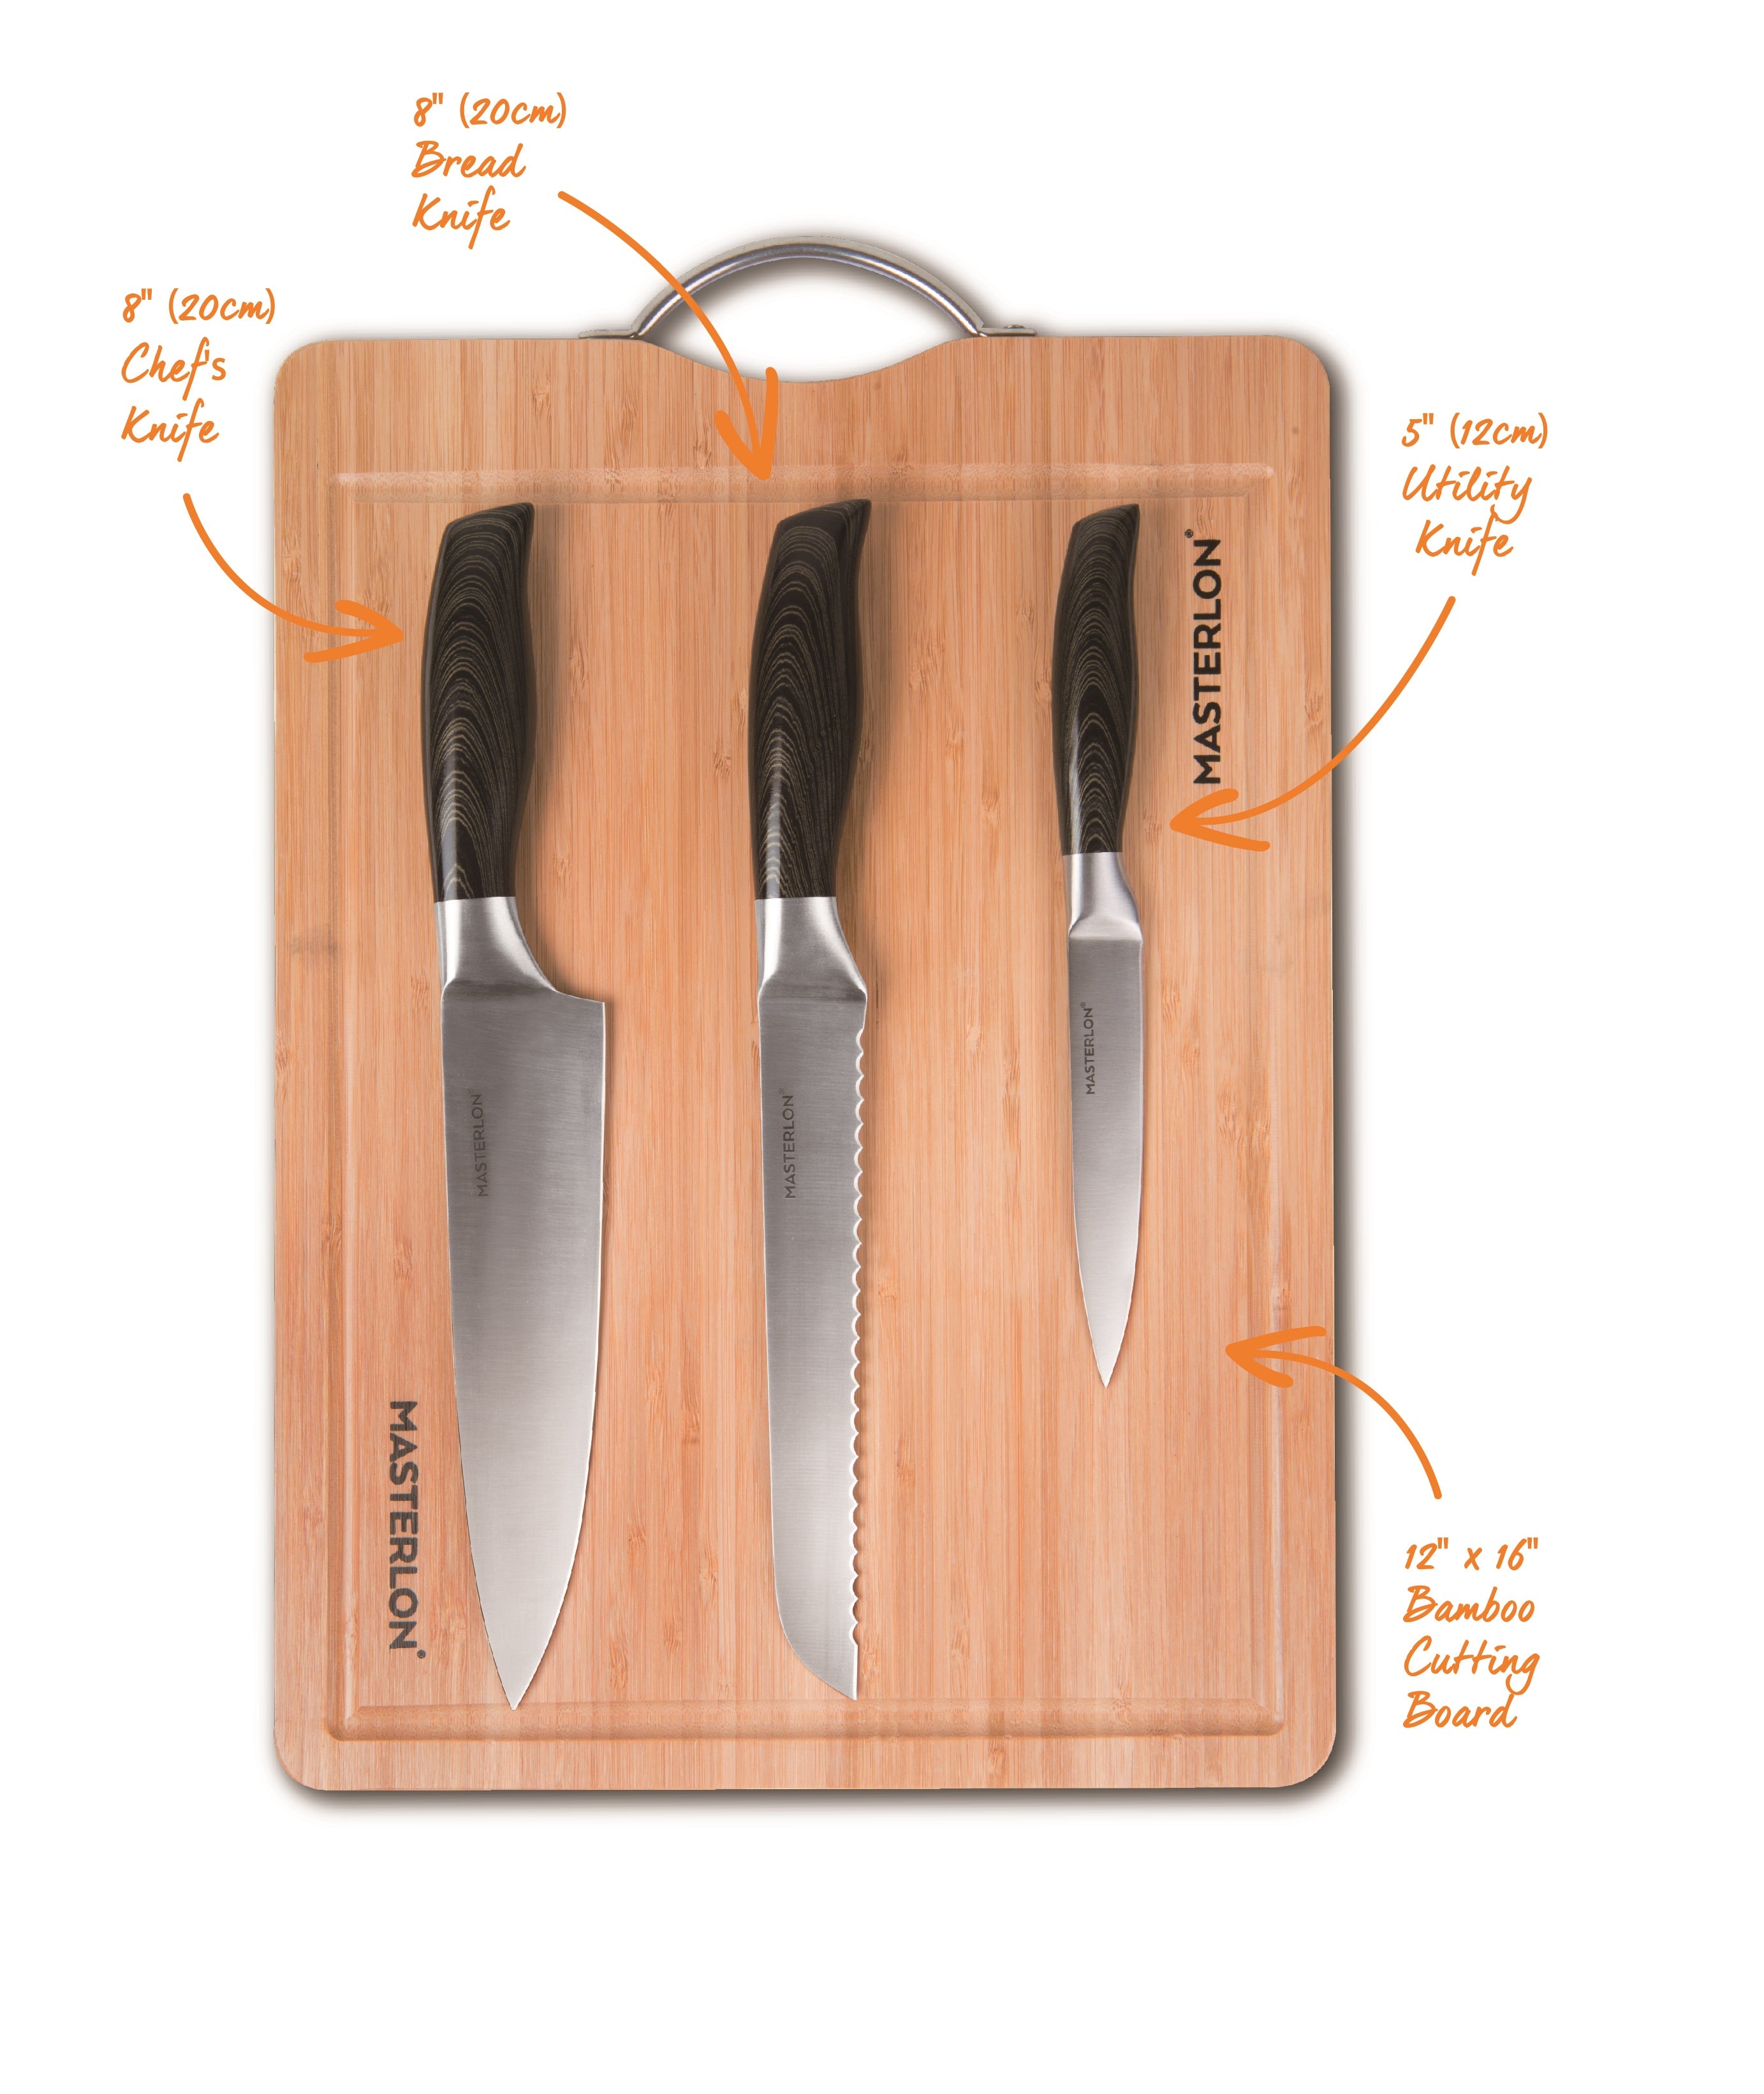 Masterlon knife set on Masterlon wooden cutting board